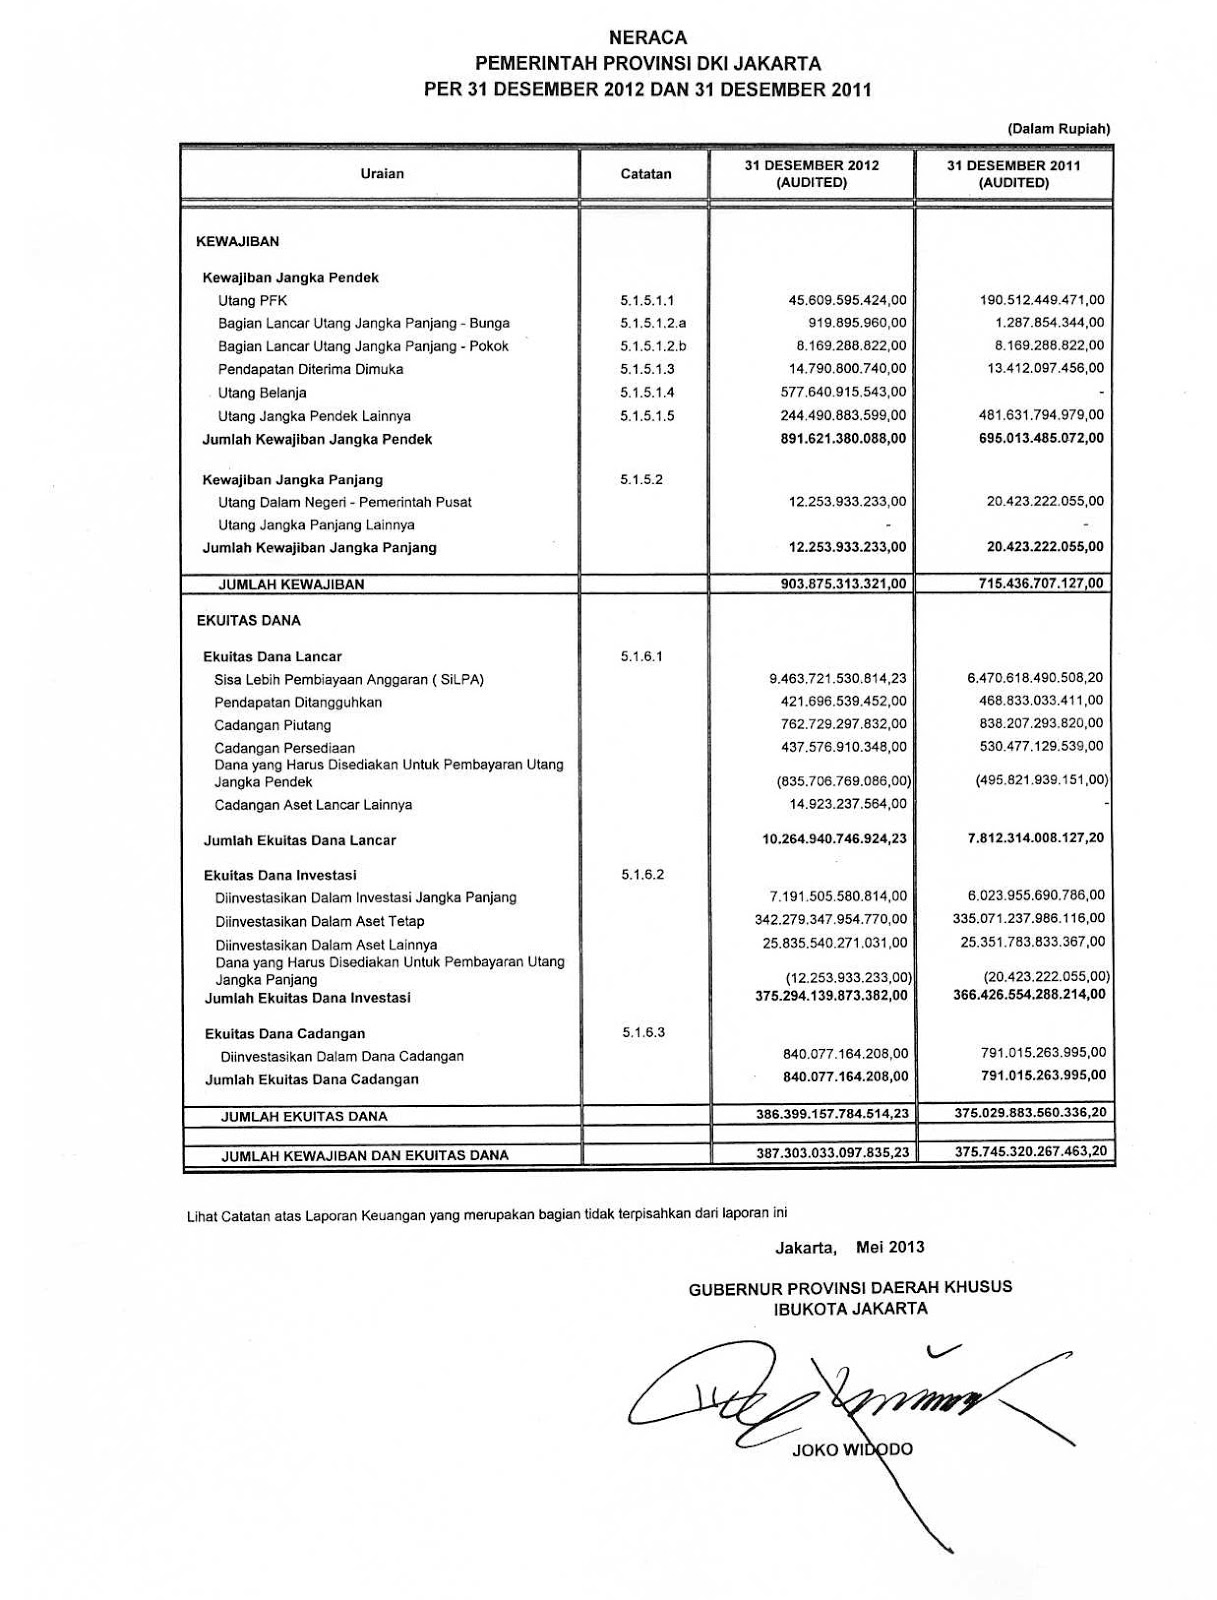 laporan keuangan pemerintah daerah